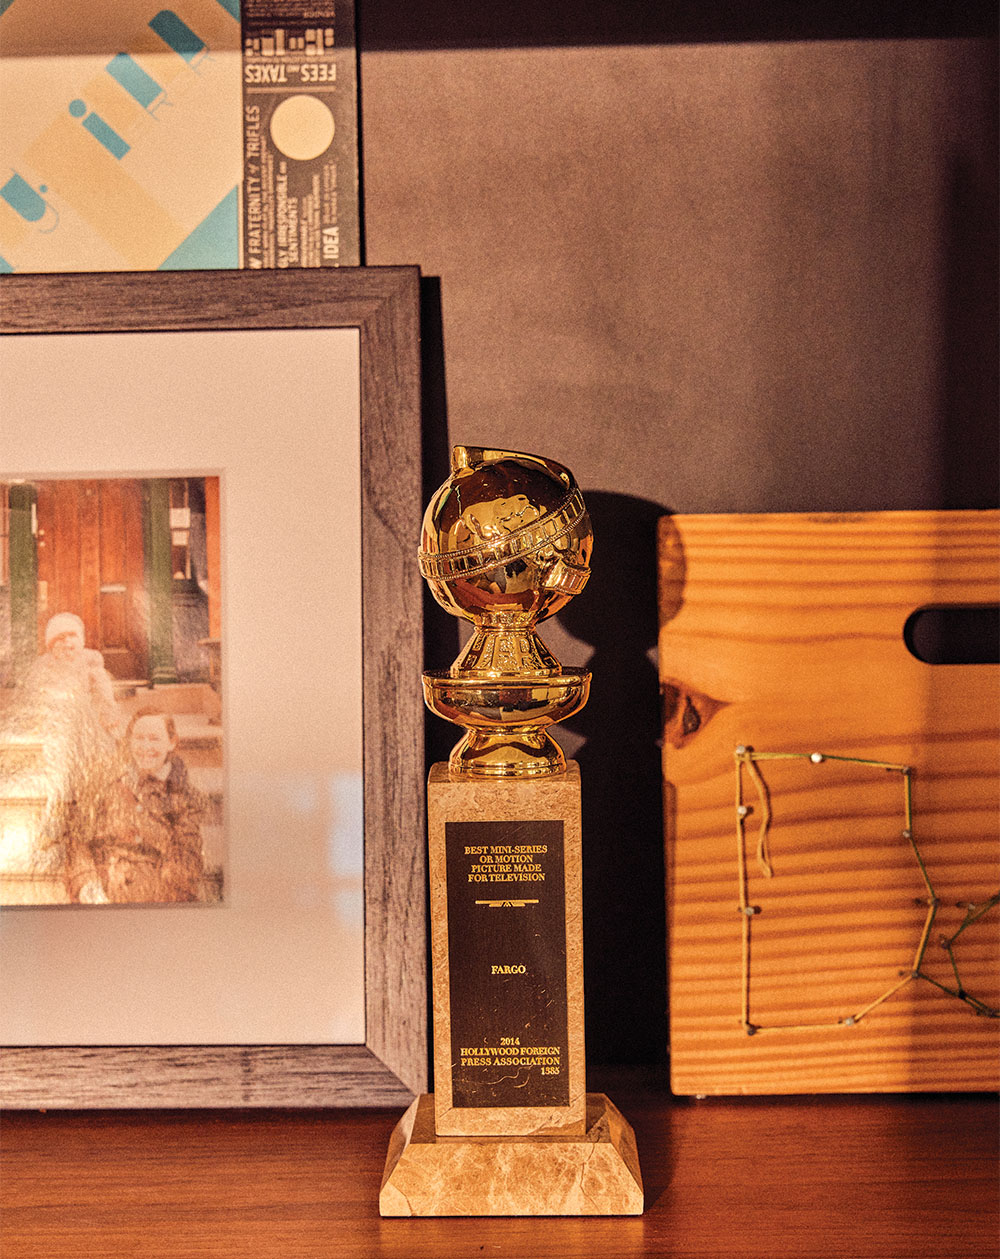 Un Golden Globe pour Fargo, remis à Hawley par Jeremy Renner, qui a joué dans sa première série, The Unusuals.